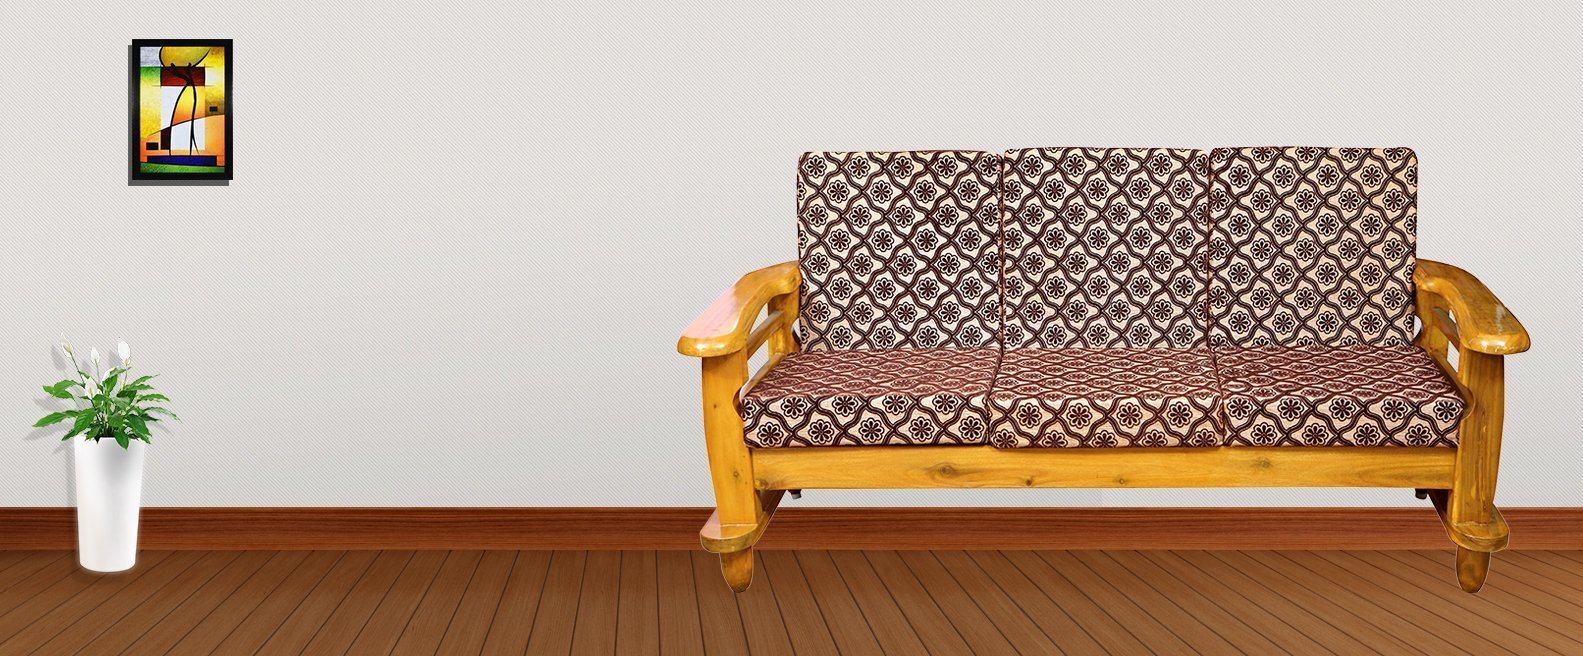 teakwood furniture sofa set